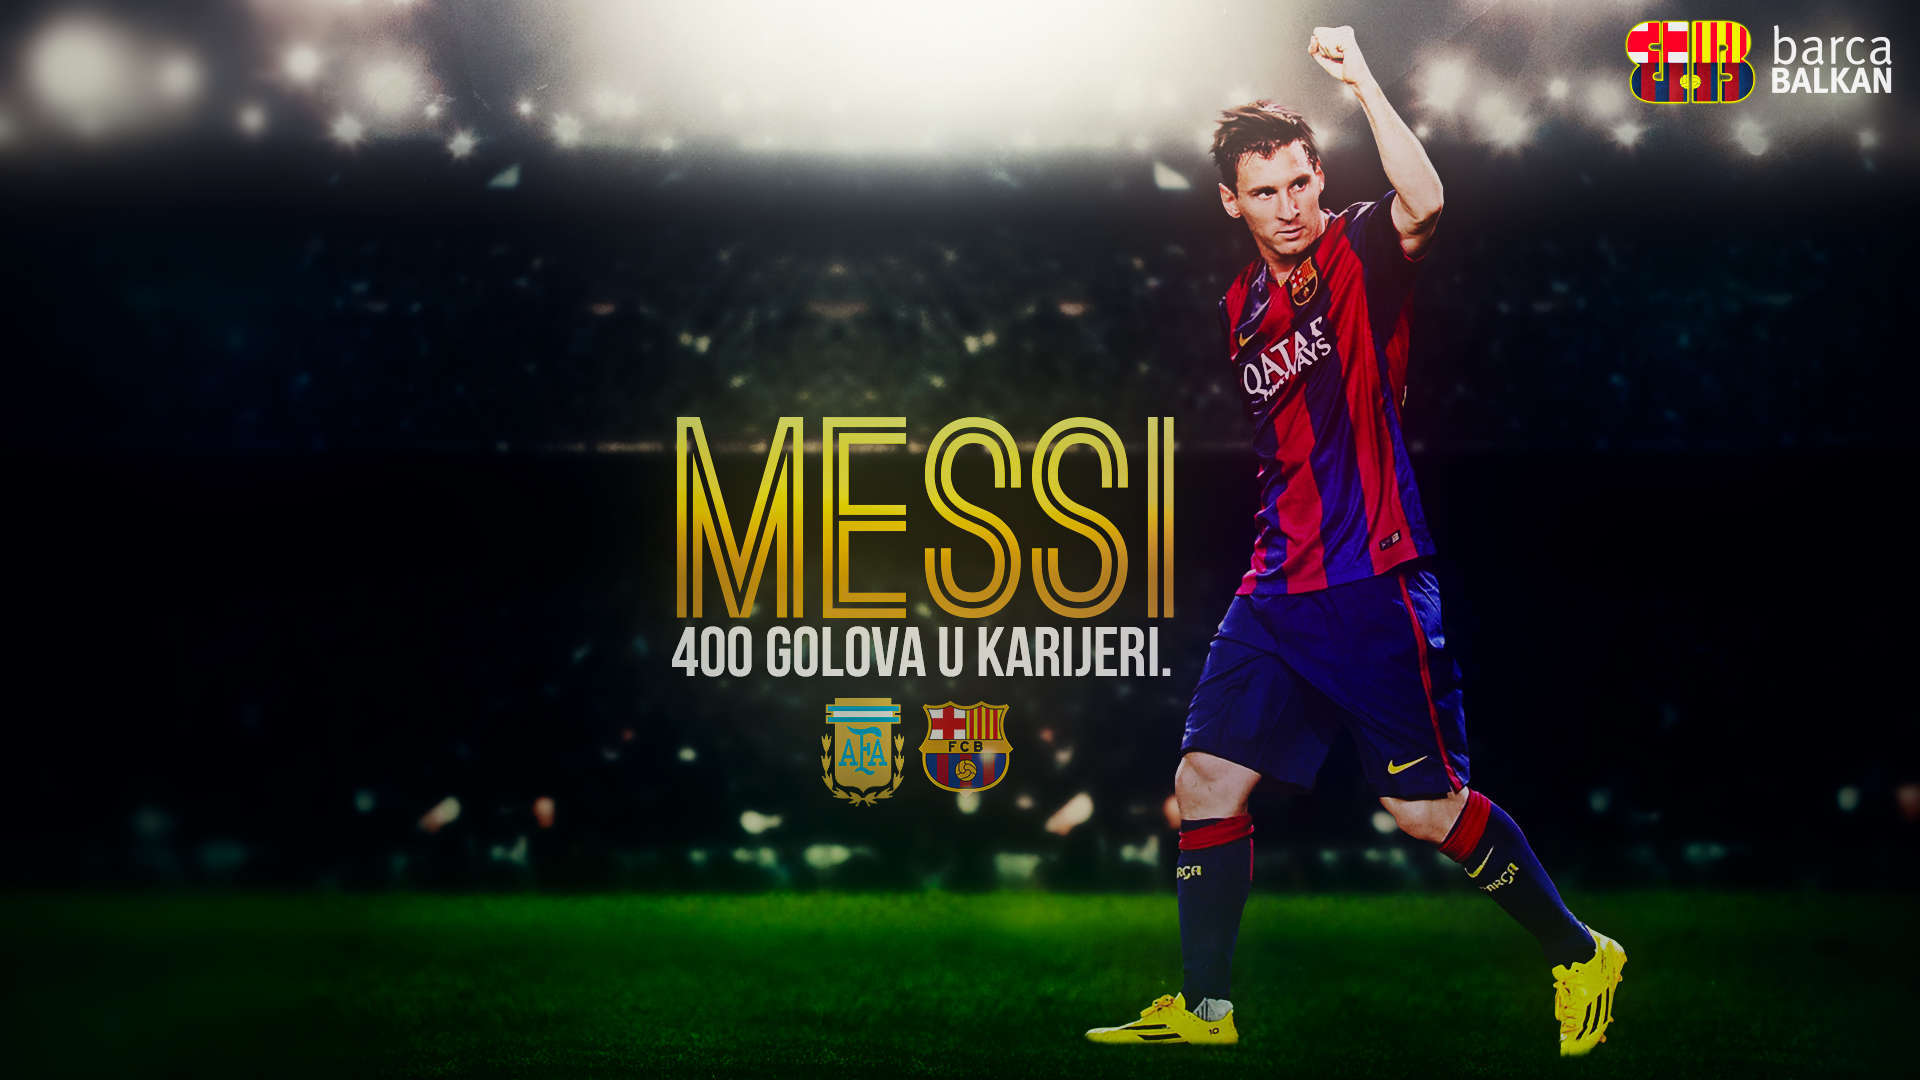 Lionel Messi 2015 Images Wallpaper  AMB